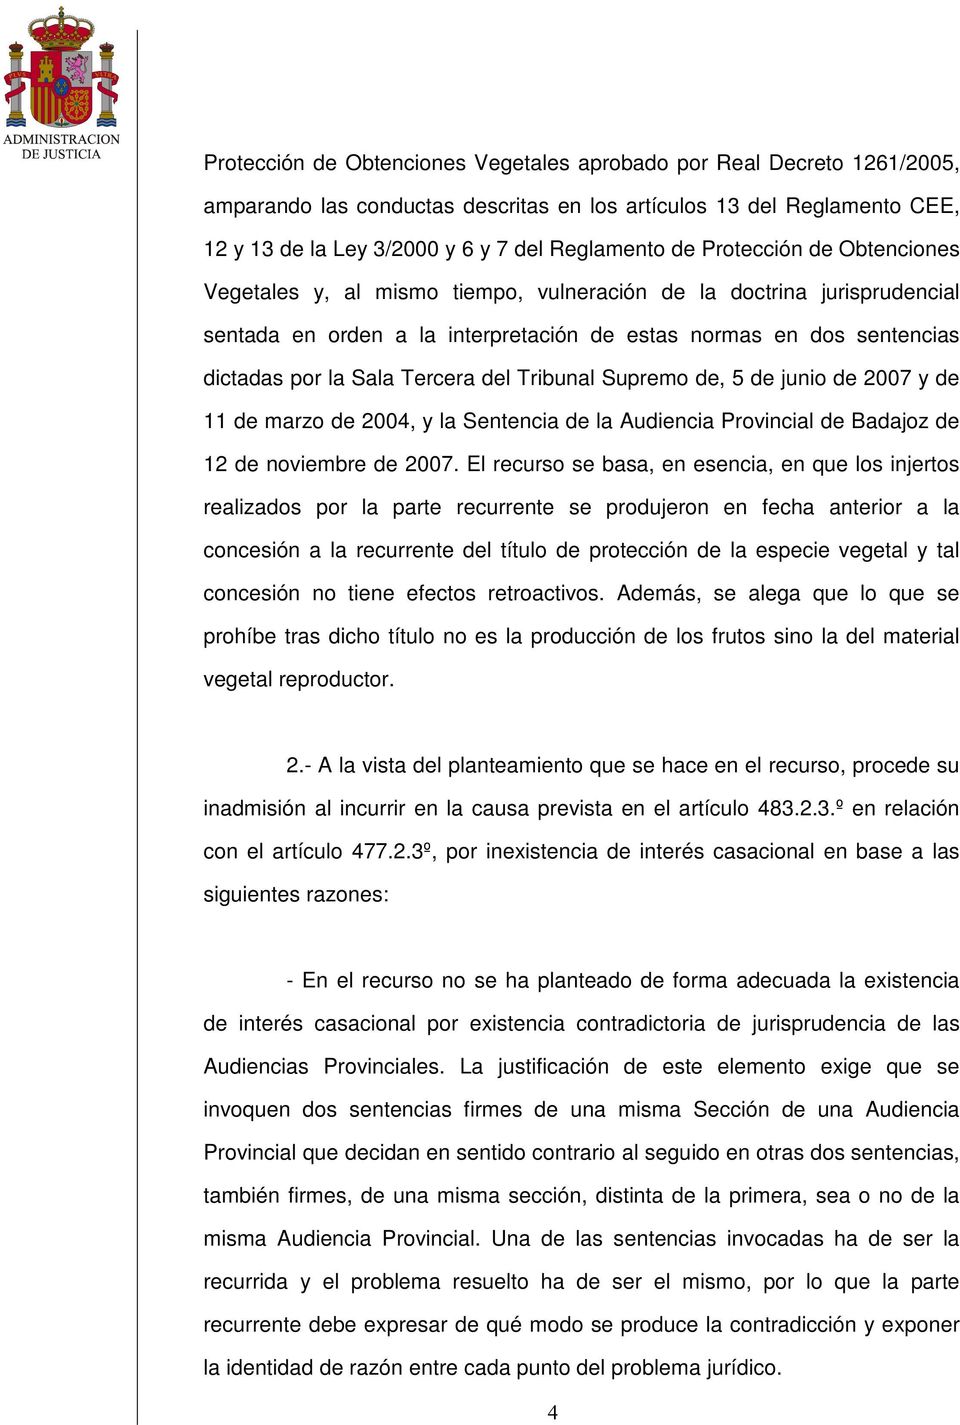 del Tribunal Supremo de, 5 de junio de 2007 y de 11 de marzo de 2004, y la Sentencia de la Audiencia Provincial de Badajoz de 12 de noviembre de 2007.